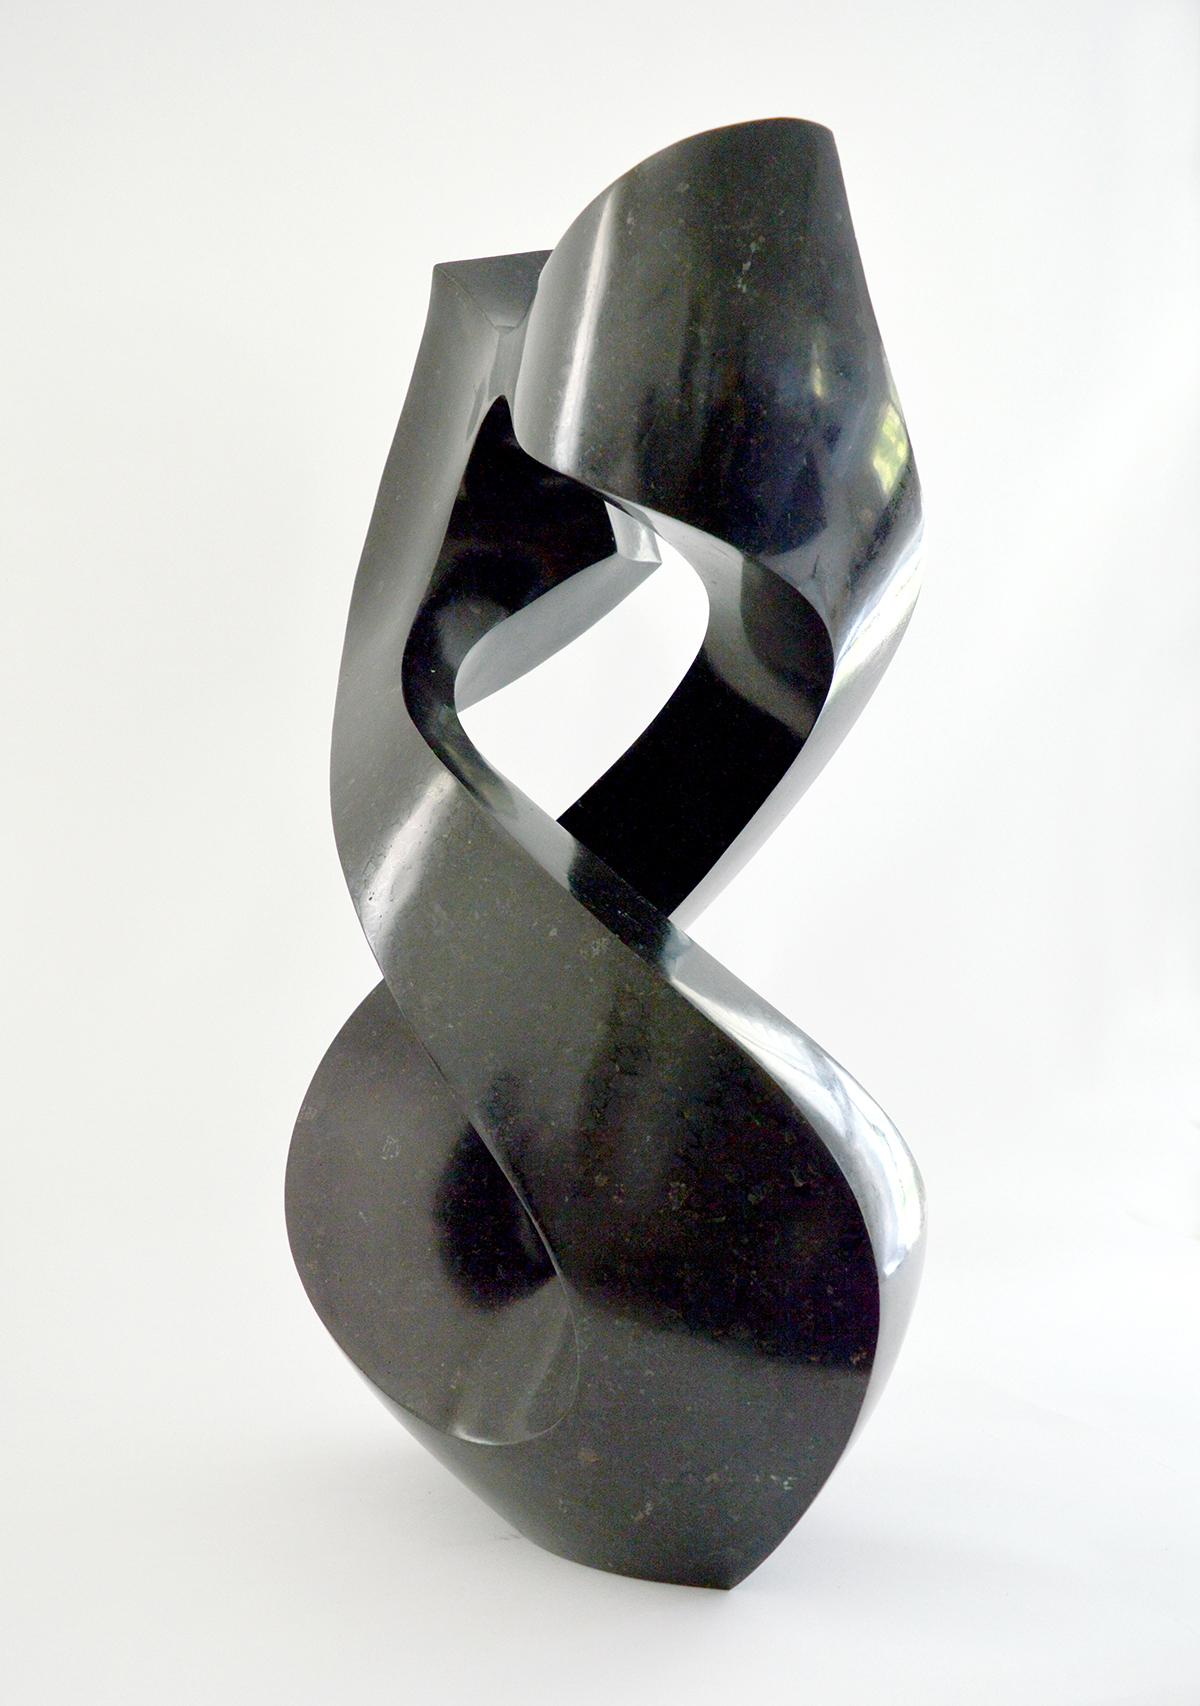 Halcyon schwarz 5/50 – Sculpture von Jeremy Guy